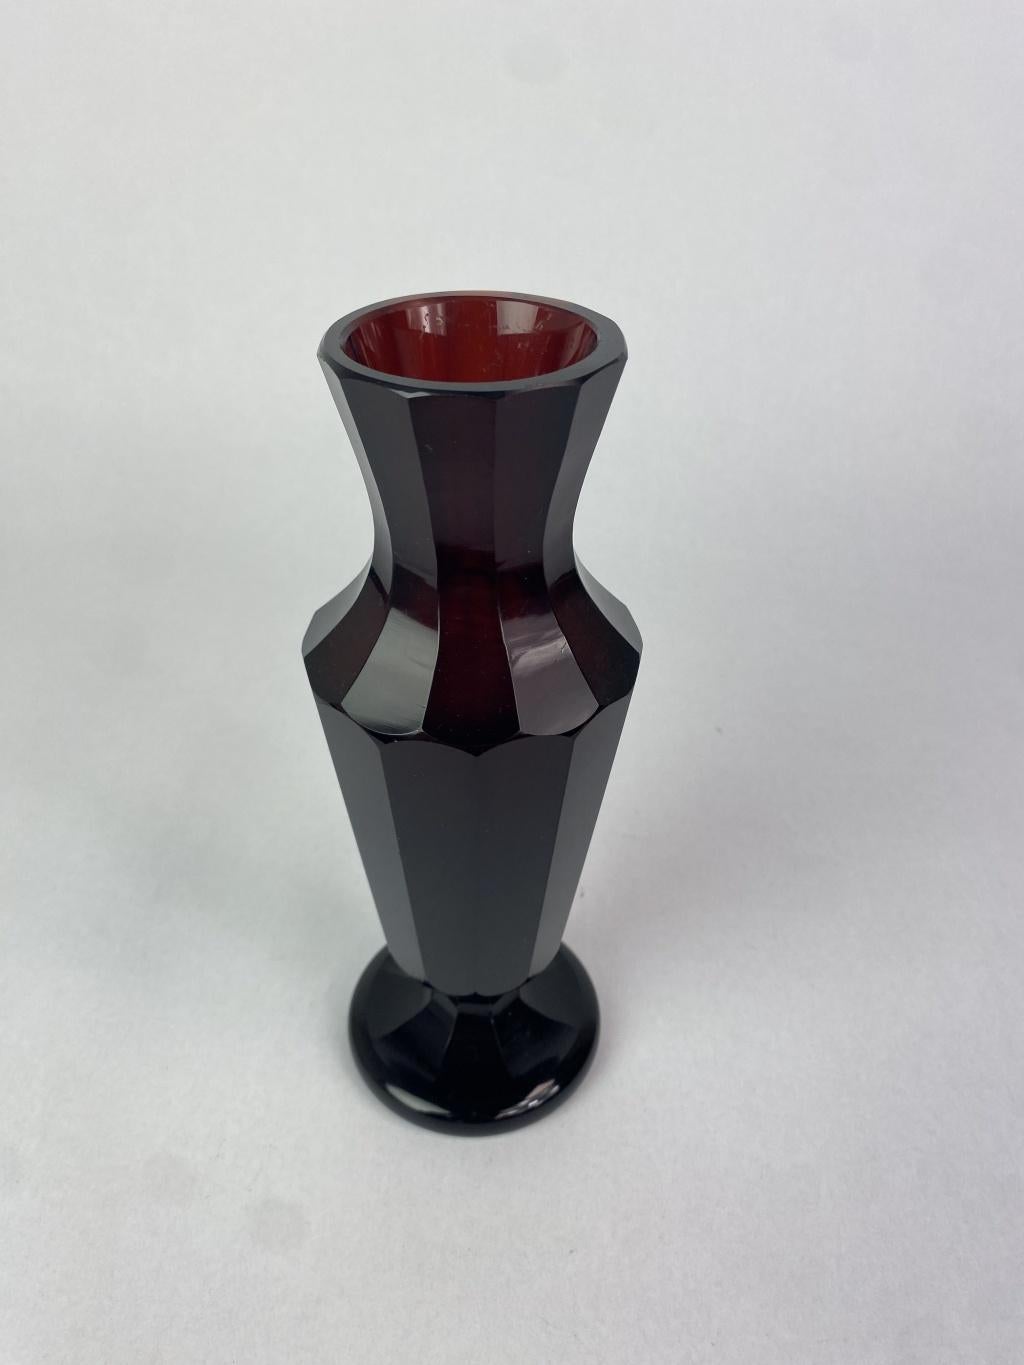 Ruby glass secession vase atr. Josef Hoffmann